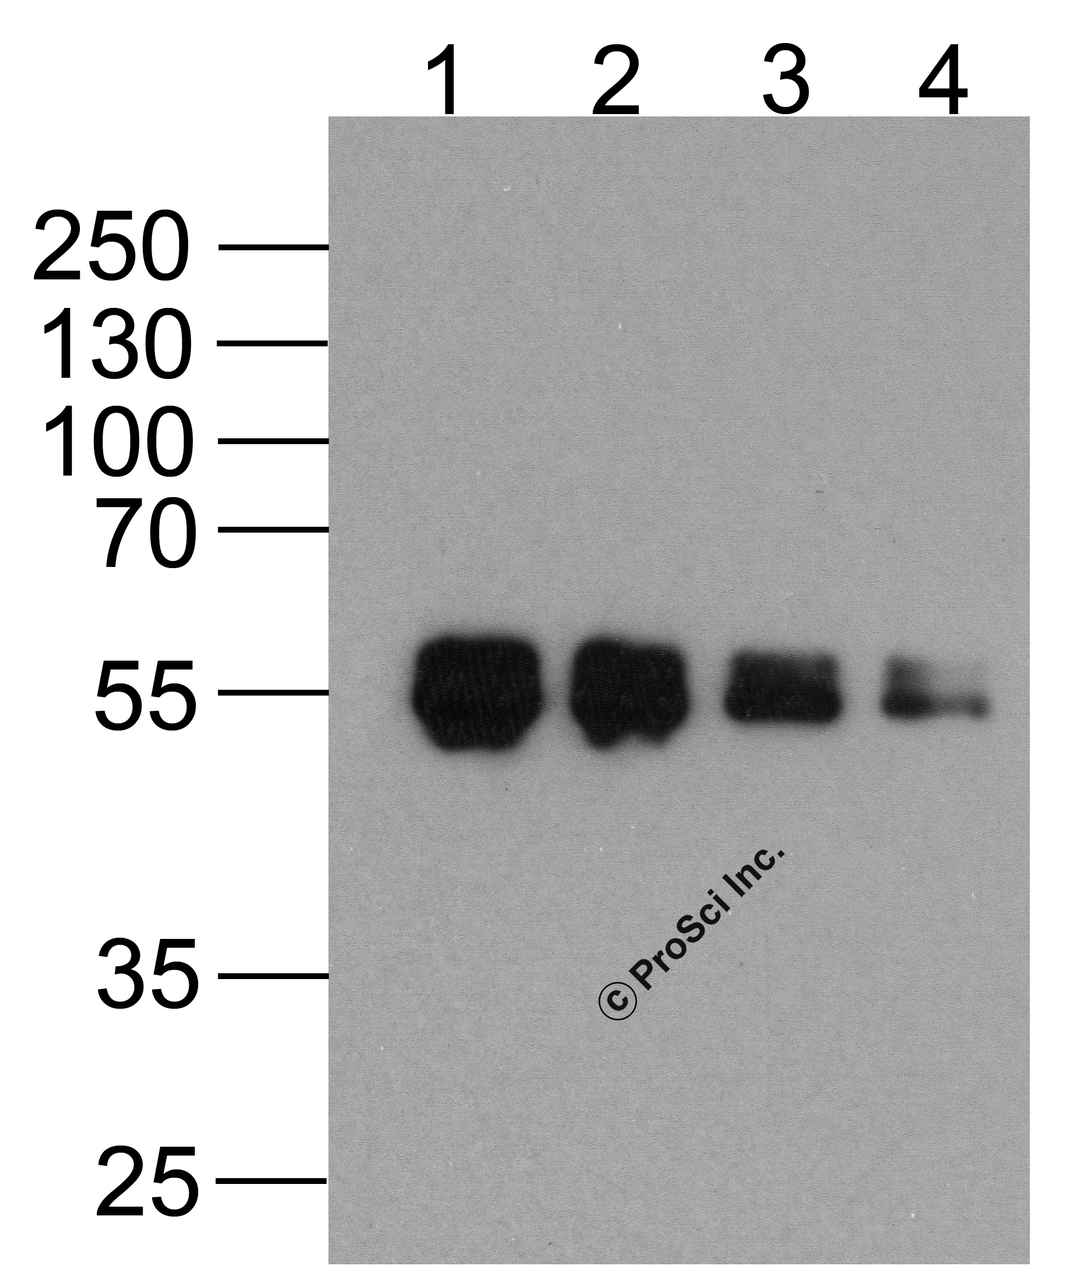 Western blot analysis of (1) 1000ng, (2) 500ng, (3) 250ng, and (4) 125ng of DDDDK-tagged recombinant protein (GGP1) with Biotin-DDDDK-tag antibody at 0.5 &#956;g/ml.